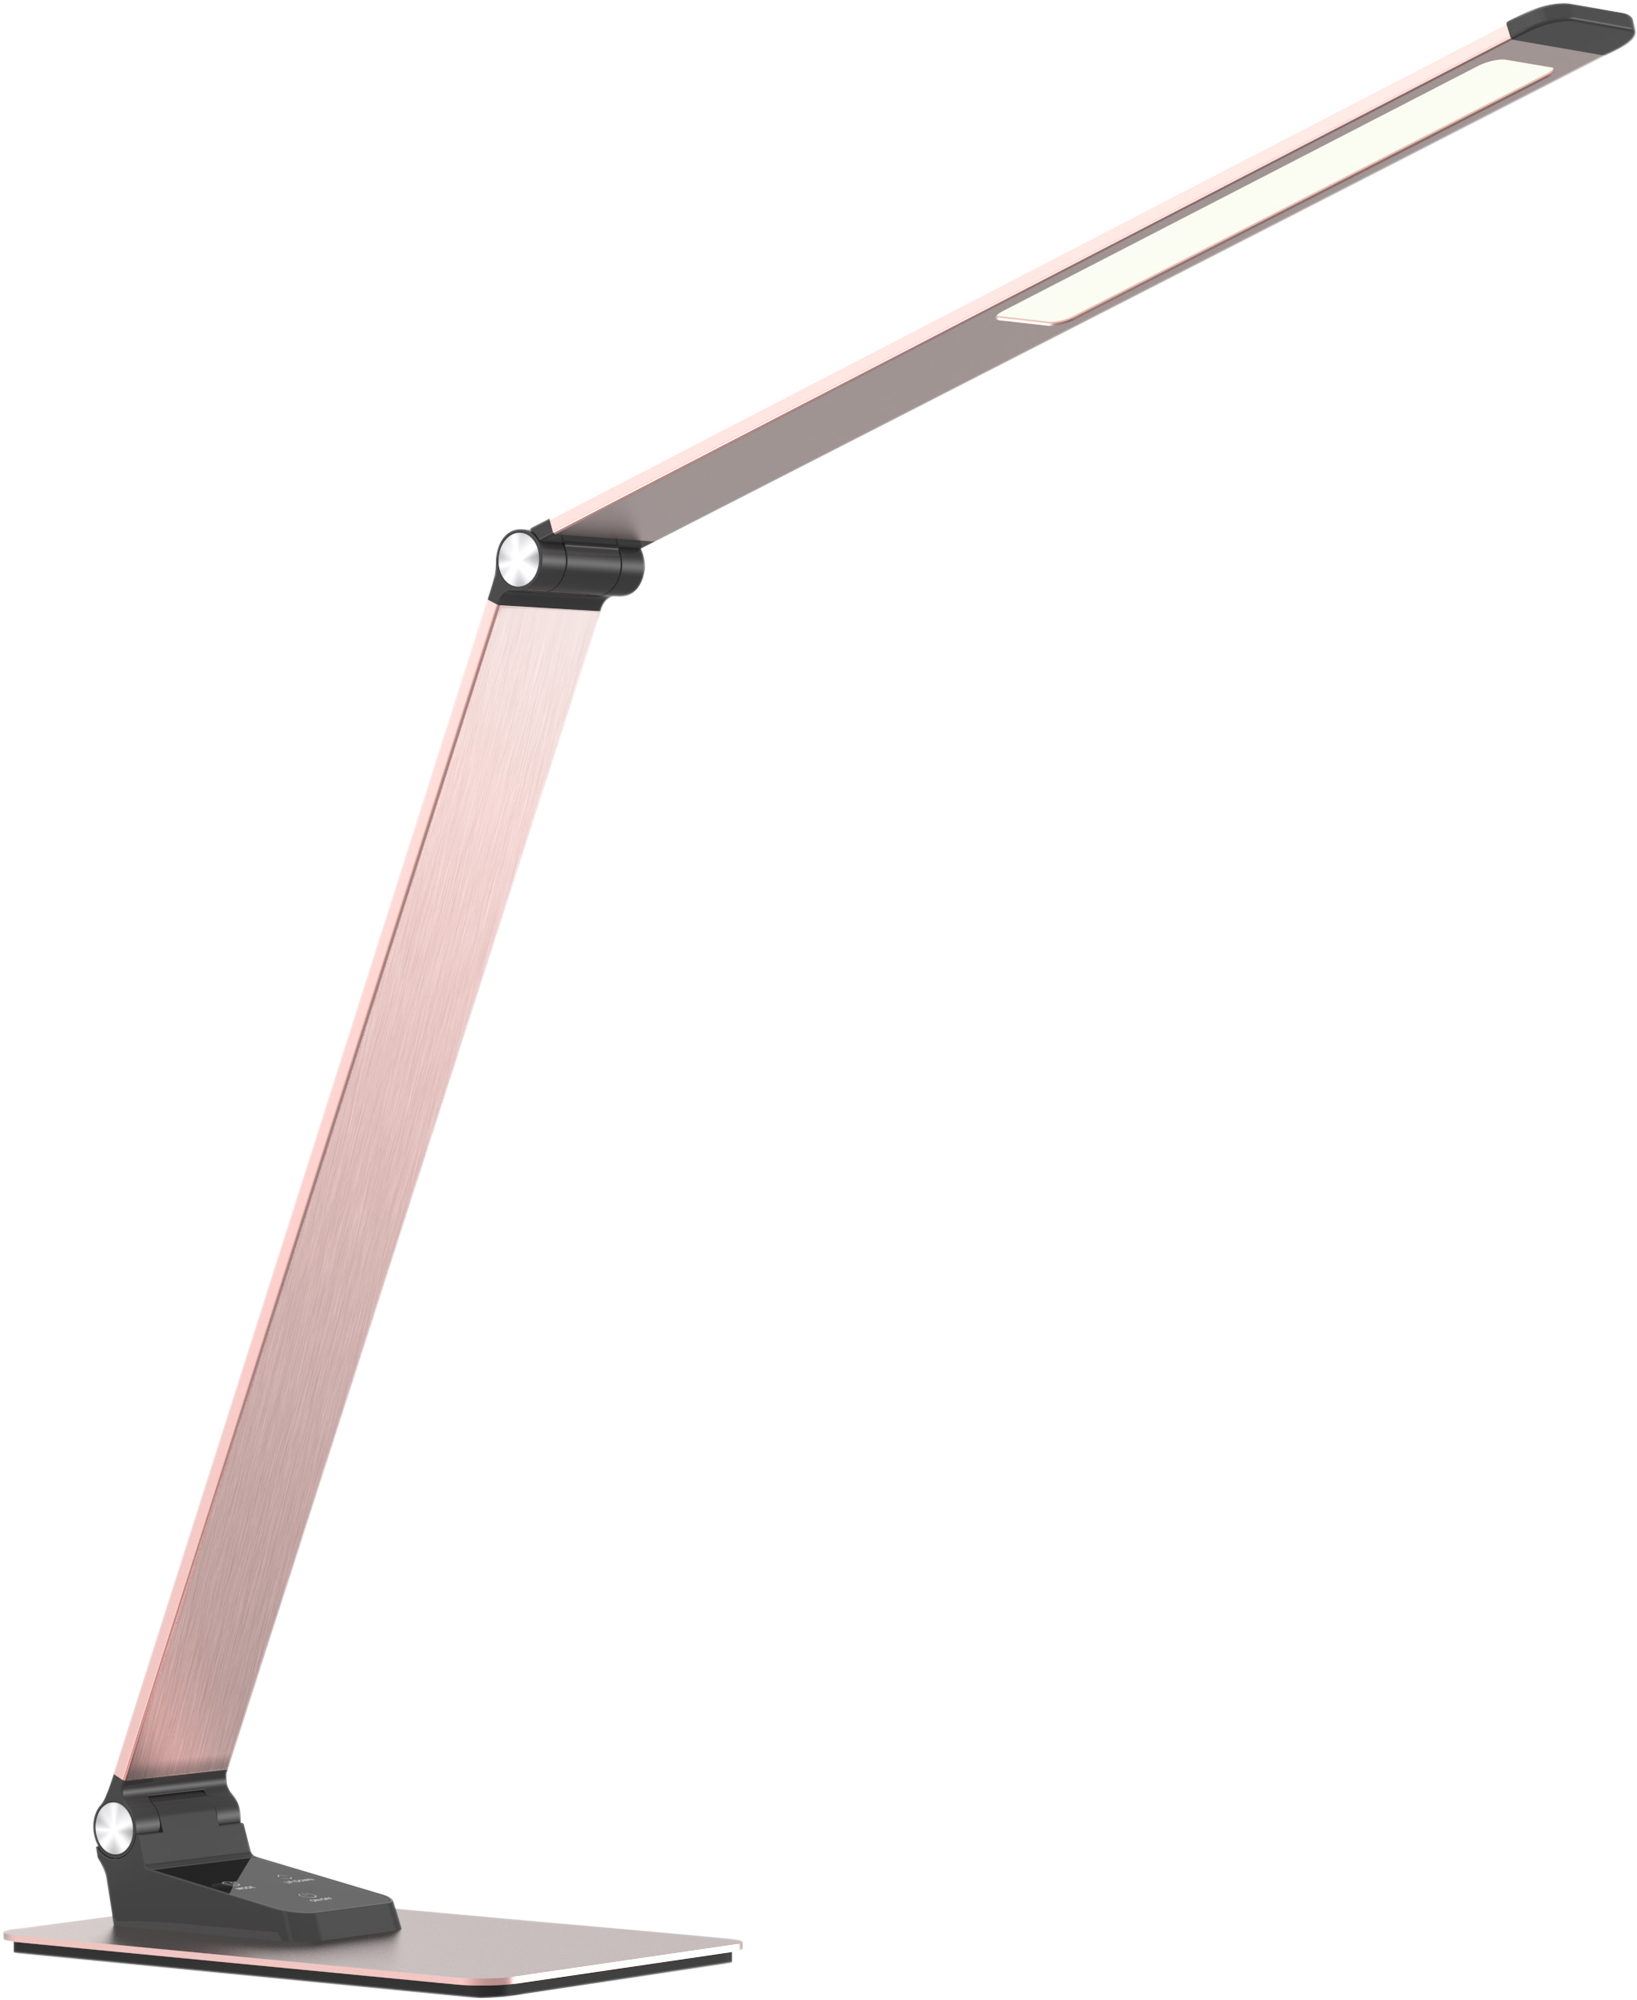 JIS規格AA形相当の明るさをもつLEDスリムテーブルランプGS1703Pローズピンク